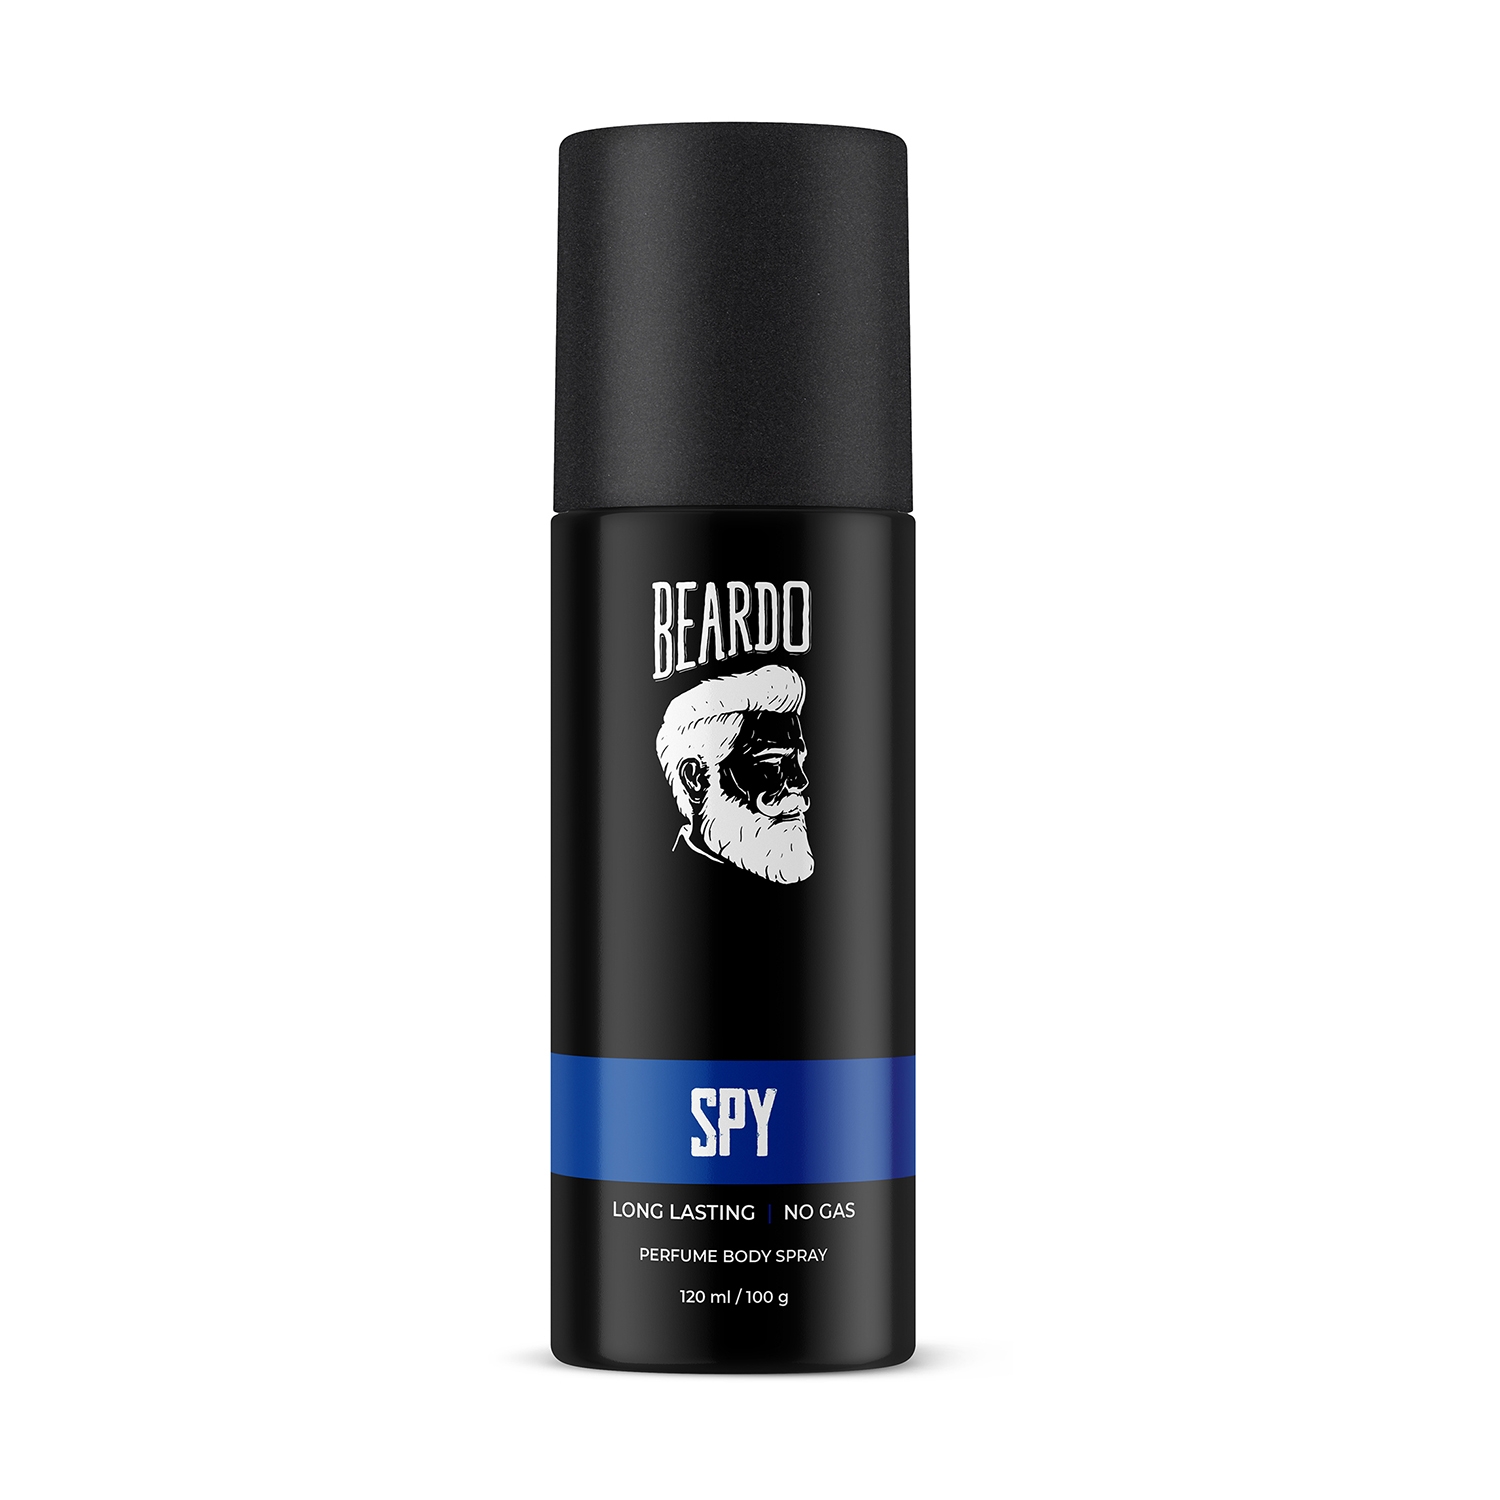 Beardo Spy Perfume Body Spray (120ml)